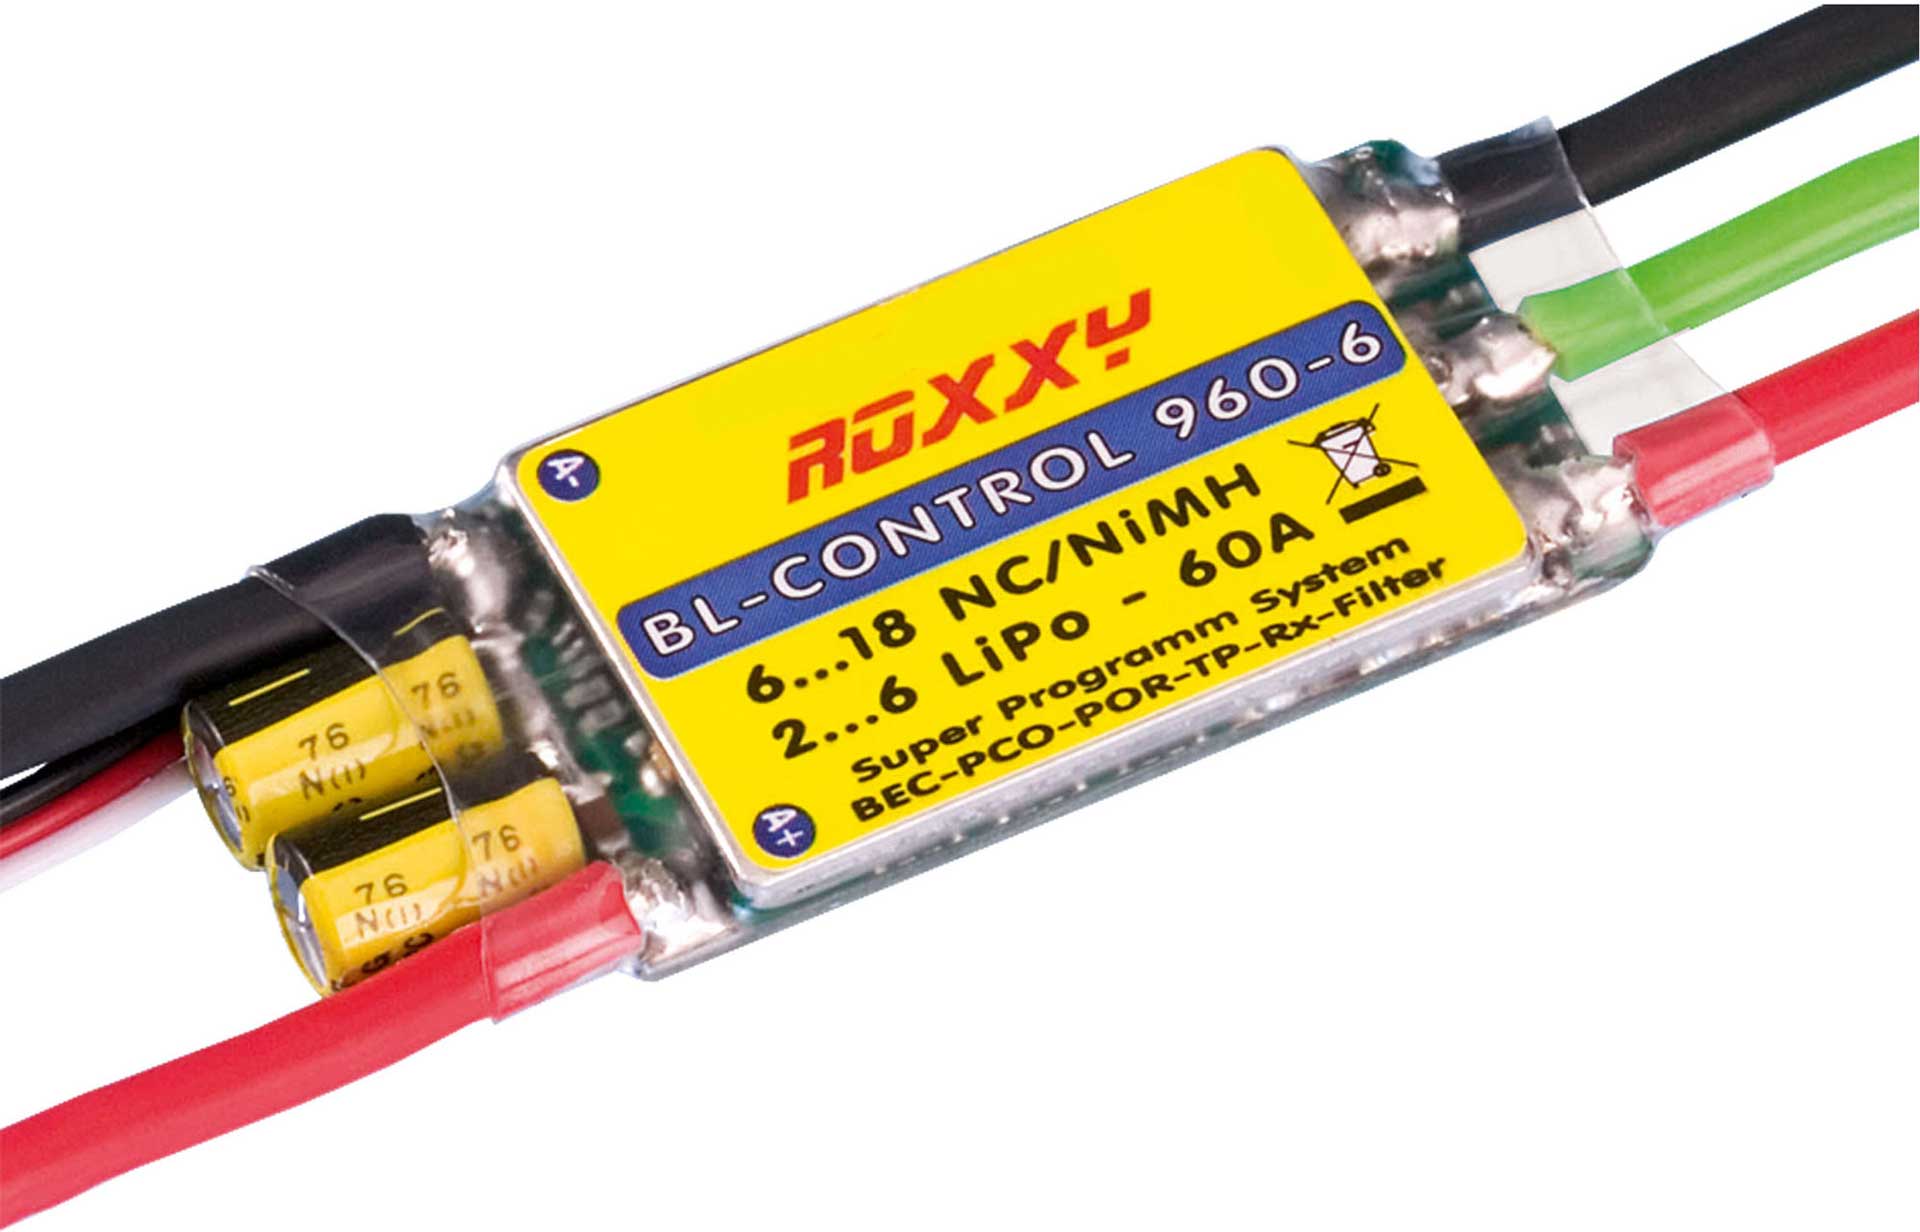 ROXXY 960-6 BL REGLER